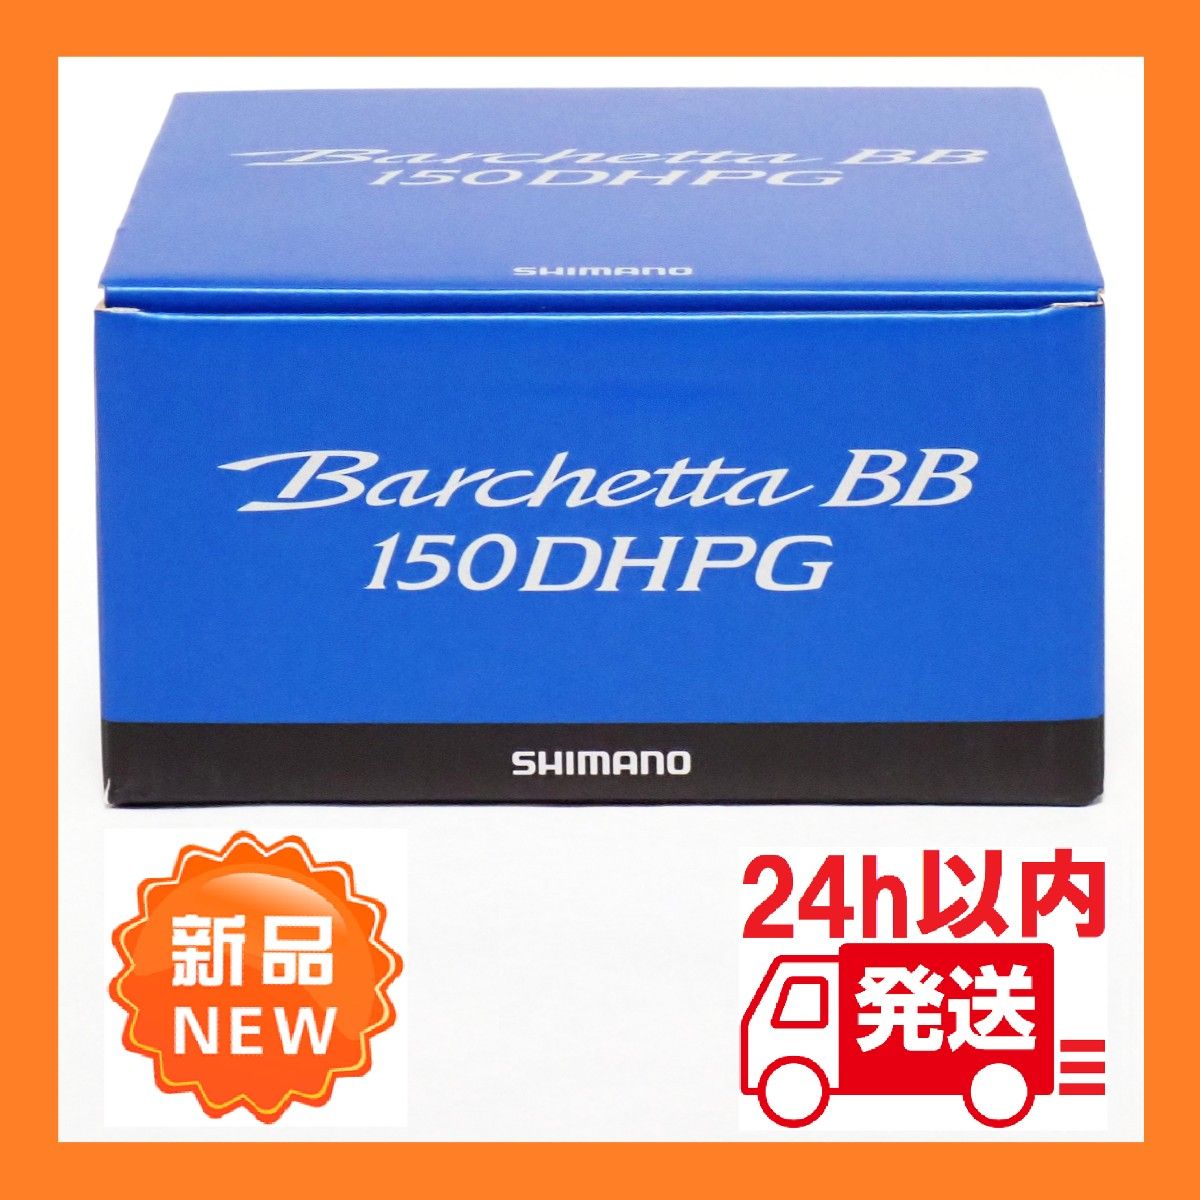 【新品】21バルケッタBB 150DHPG 右ハンドル シマノ Barchetta BB RIGHT SHIMANO